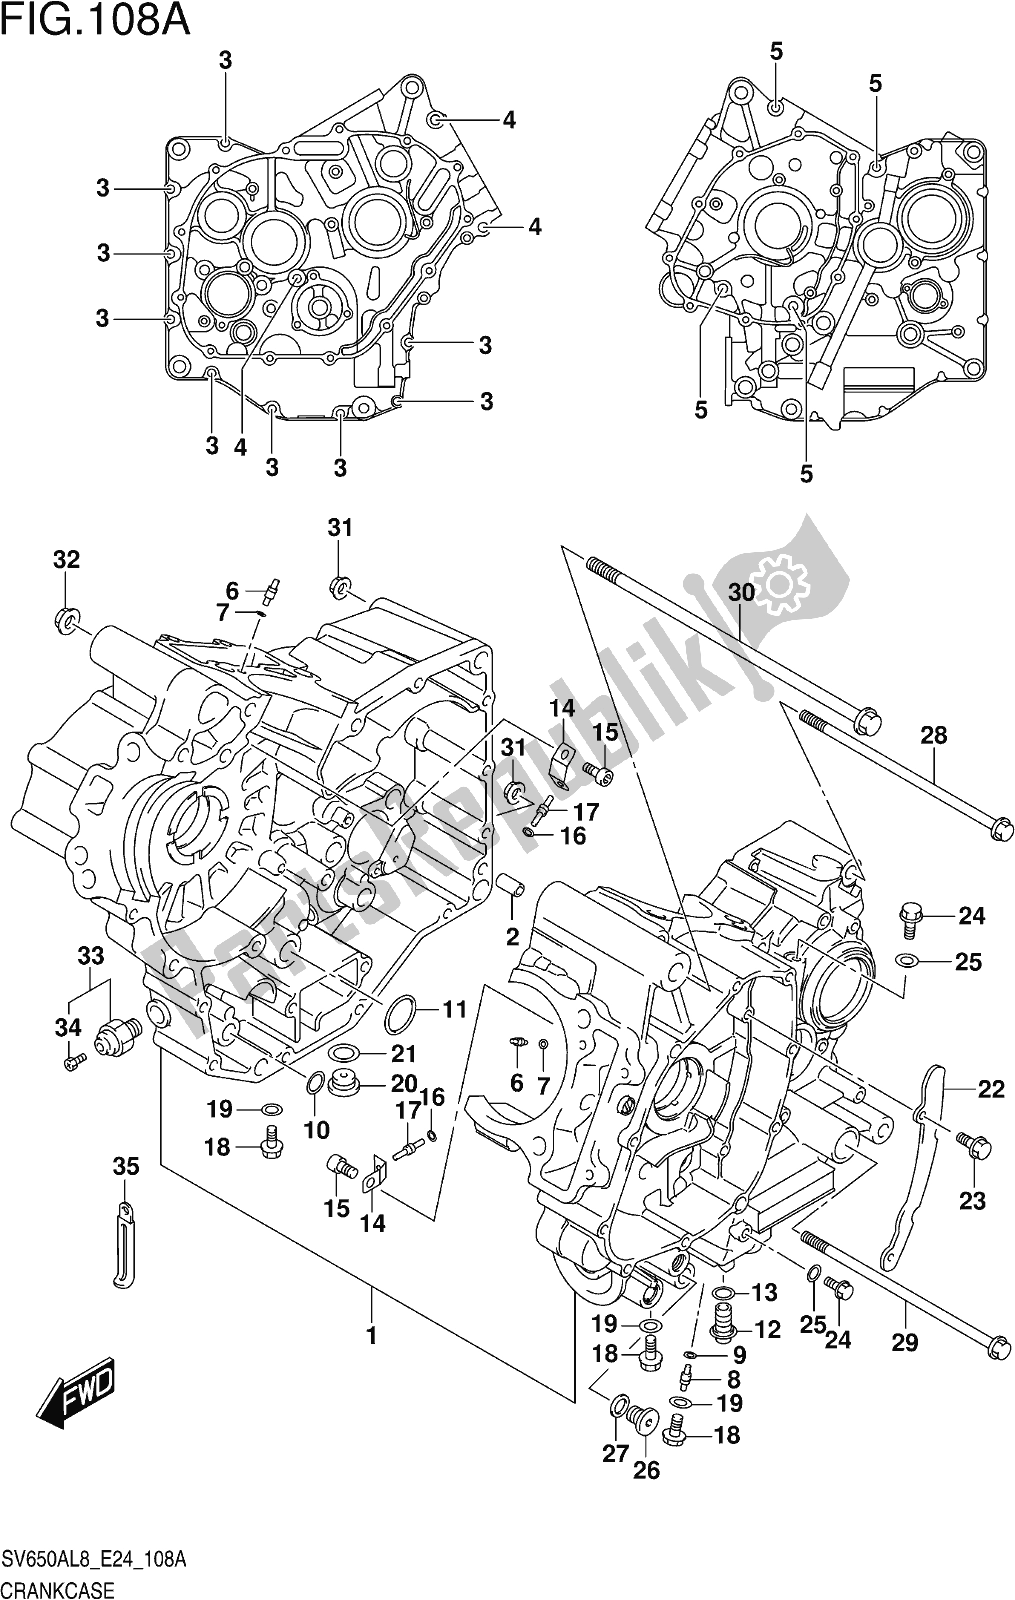 Alle onderdelen voor de Fig. 108a Crankcase van de Suzuki SV 650 AU 2018